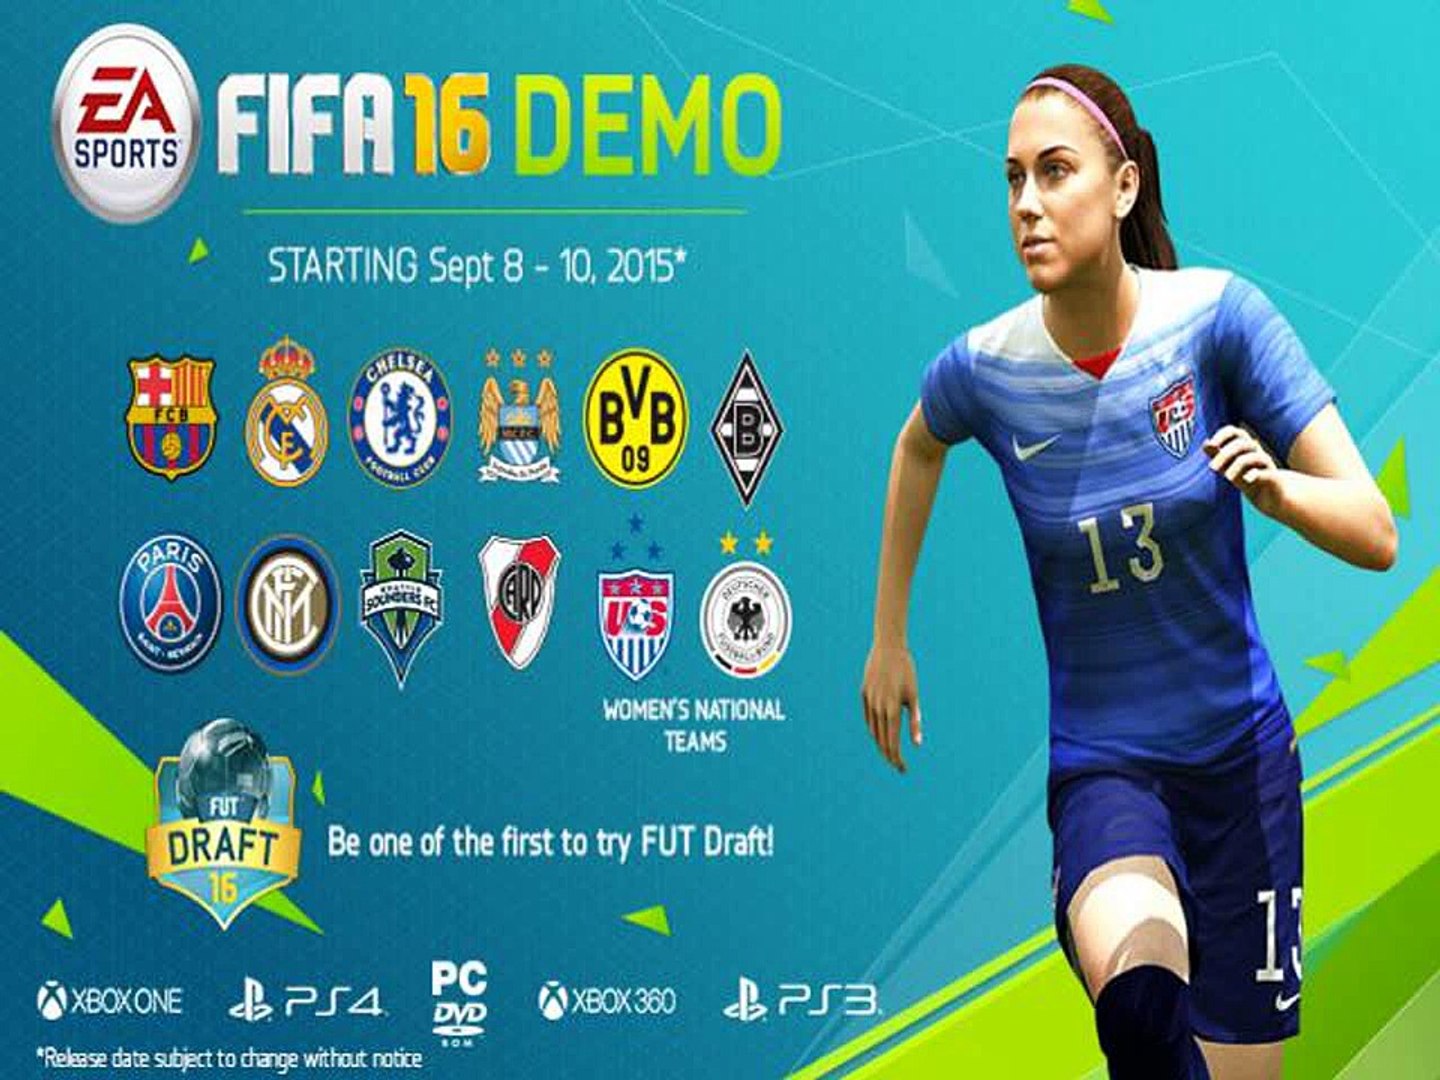 FIFA 16 CD Key Generator Origin Code Free Download - video Dailymotion